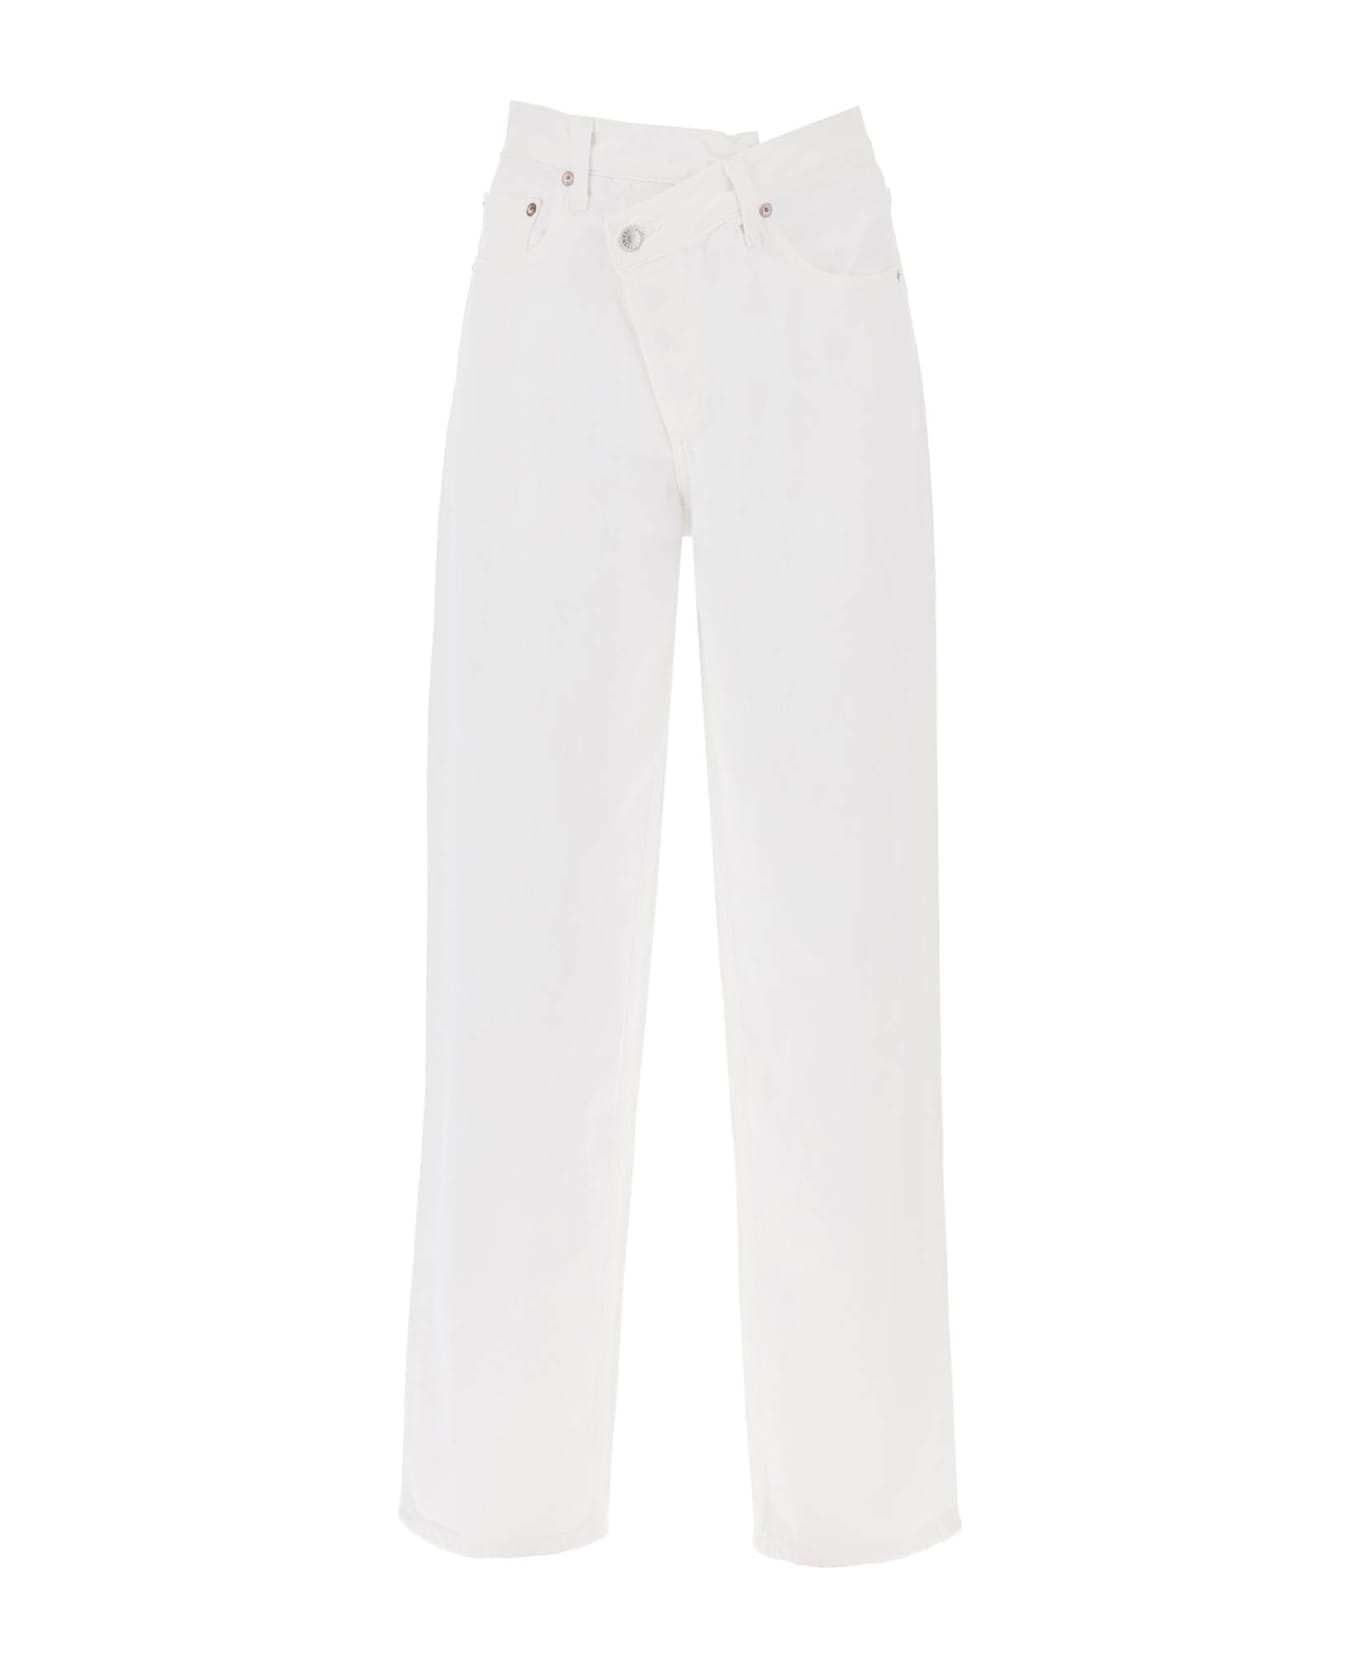 AGOLDE Criss Cross Jeans - MILK SHAKE (White)